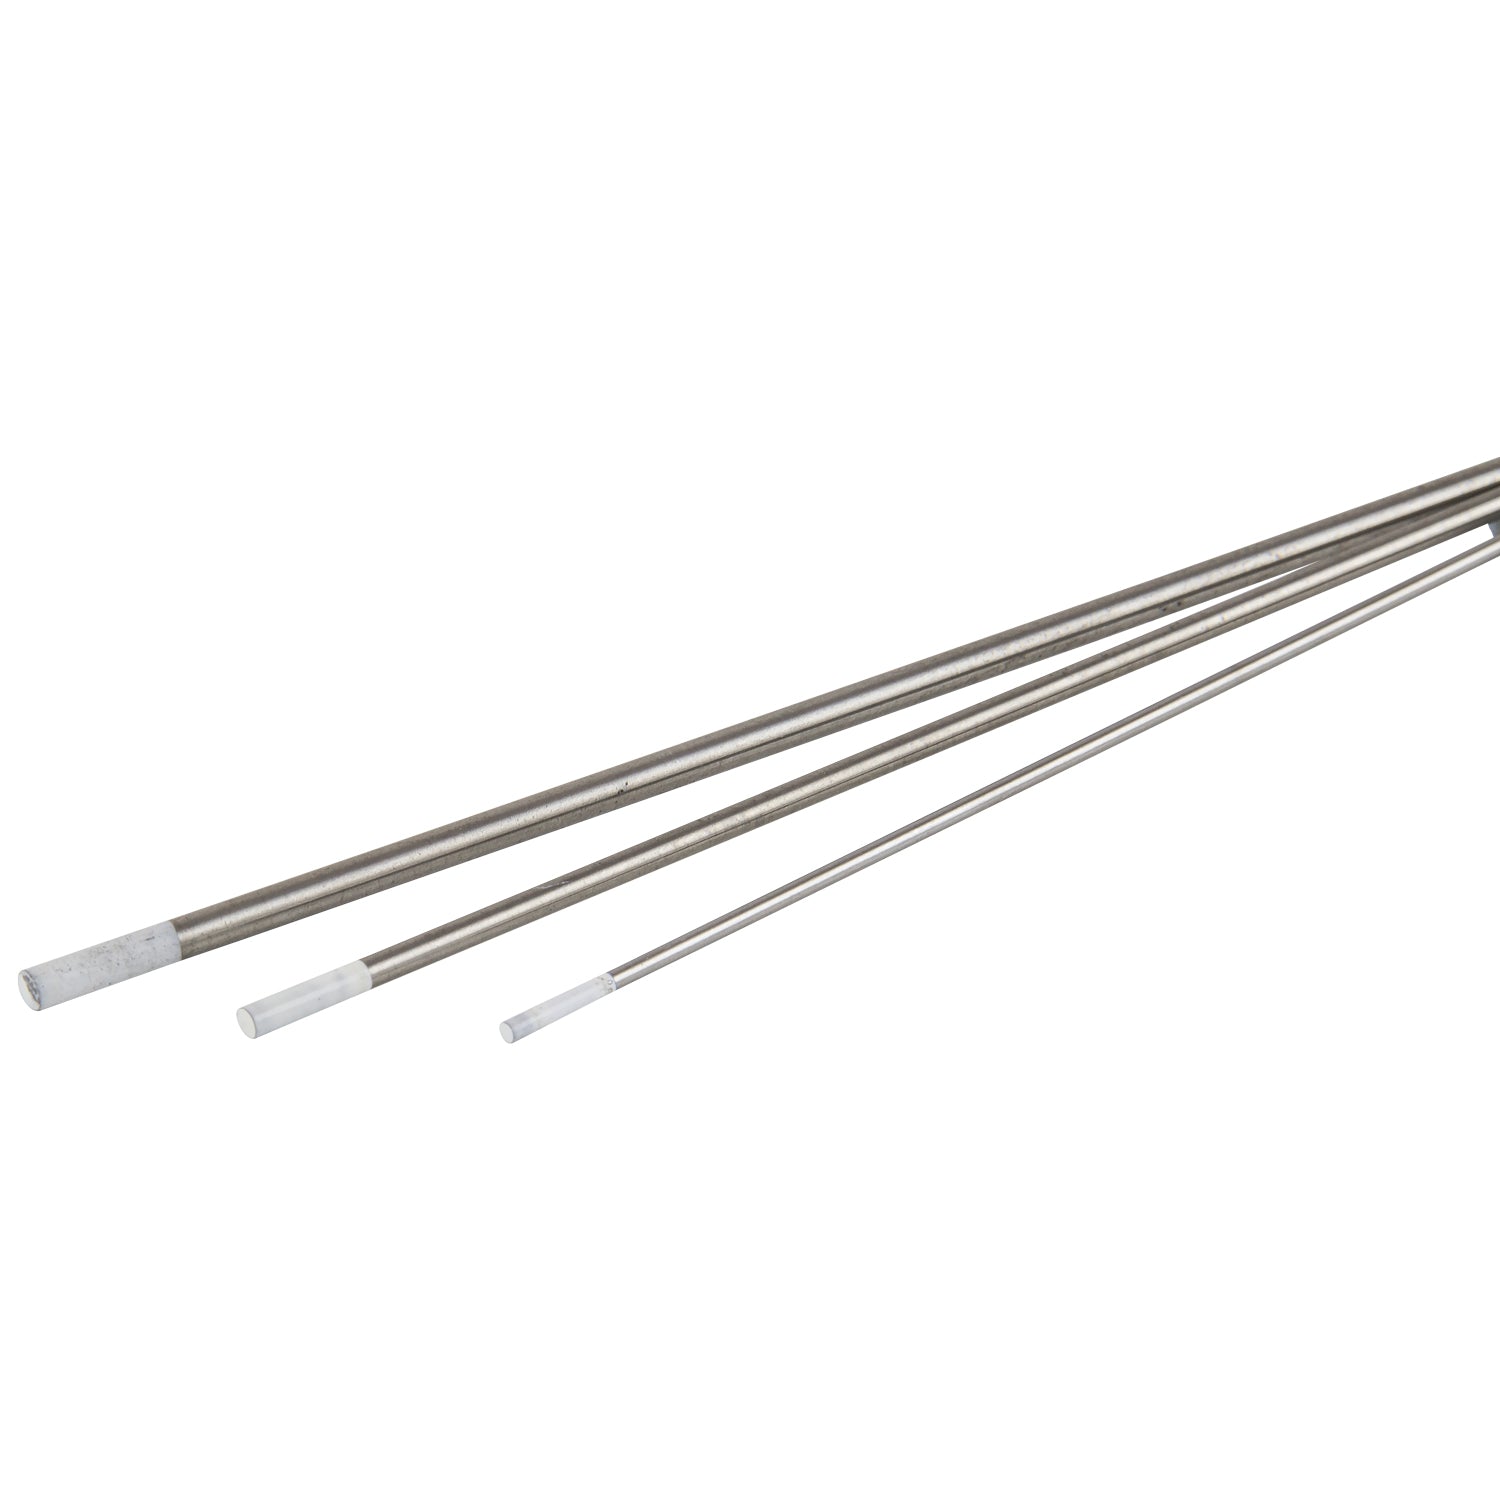 SIP 2.4mm 0.9% Zirconiated Tungsten Electrodes